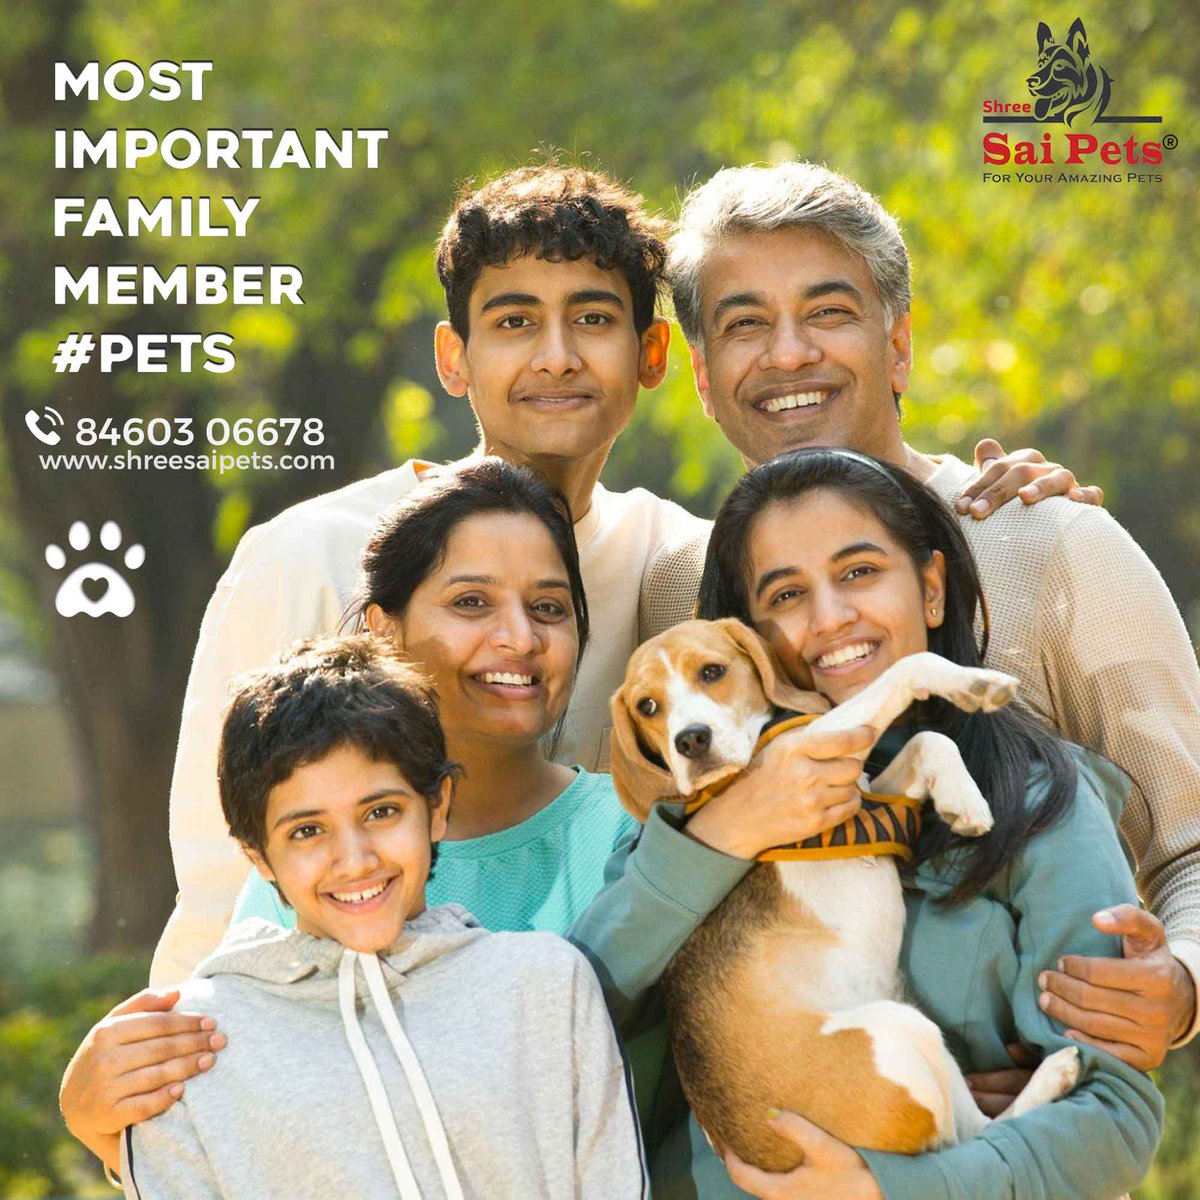 Most Important #FamilyMember #Pets !
#Beagle #DogBread #petshop #cutepets #petscorner #petsofig #picpets #petsitter #worldofcutepets #petsmart #petsitting #lovepets #exoticpets #petsofinsta #shopetsy #petsgram #friendlypets #ShreeSaiPets #inspiredbypets #petsarefamily #igpets